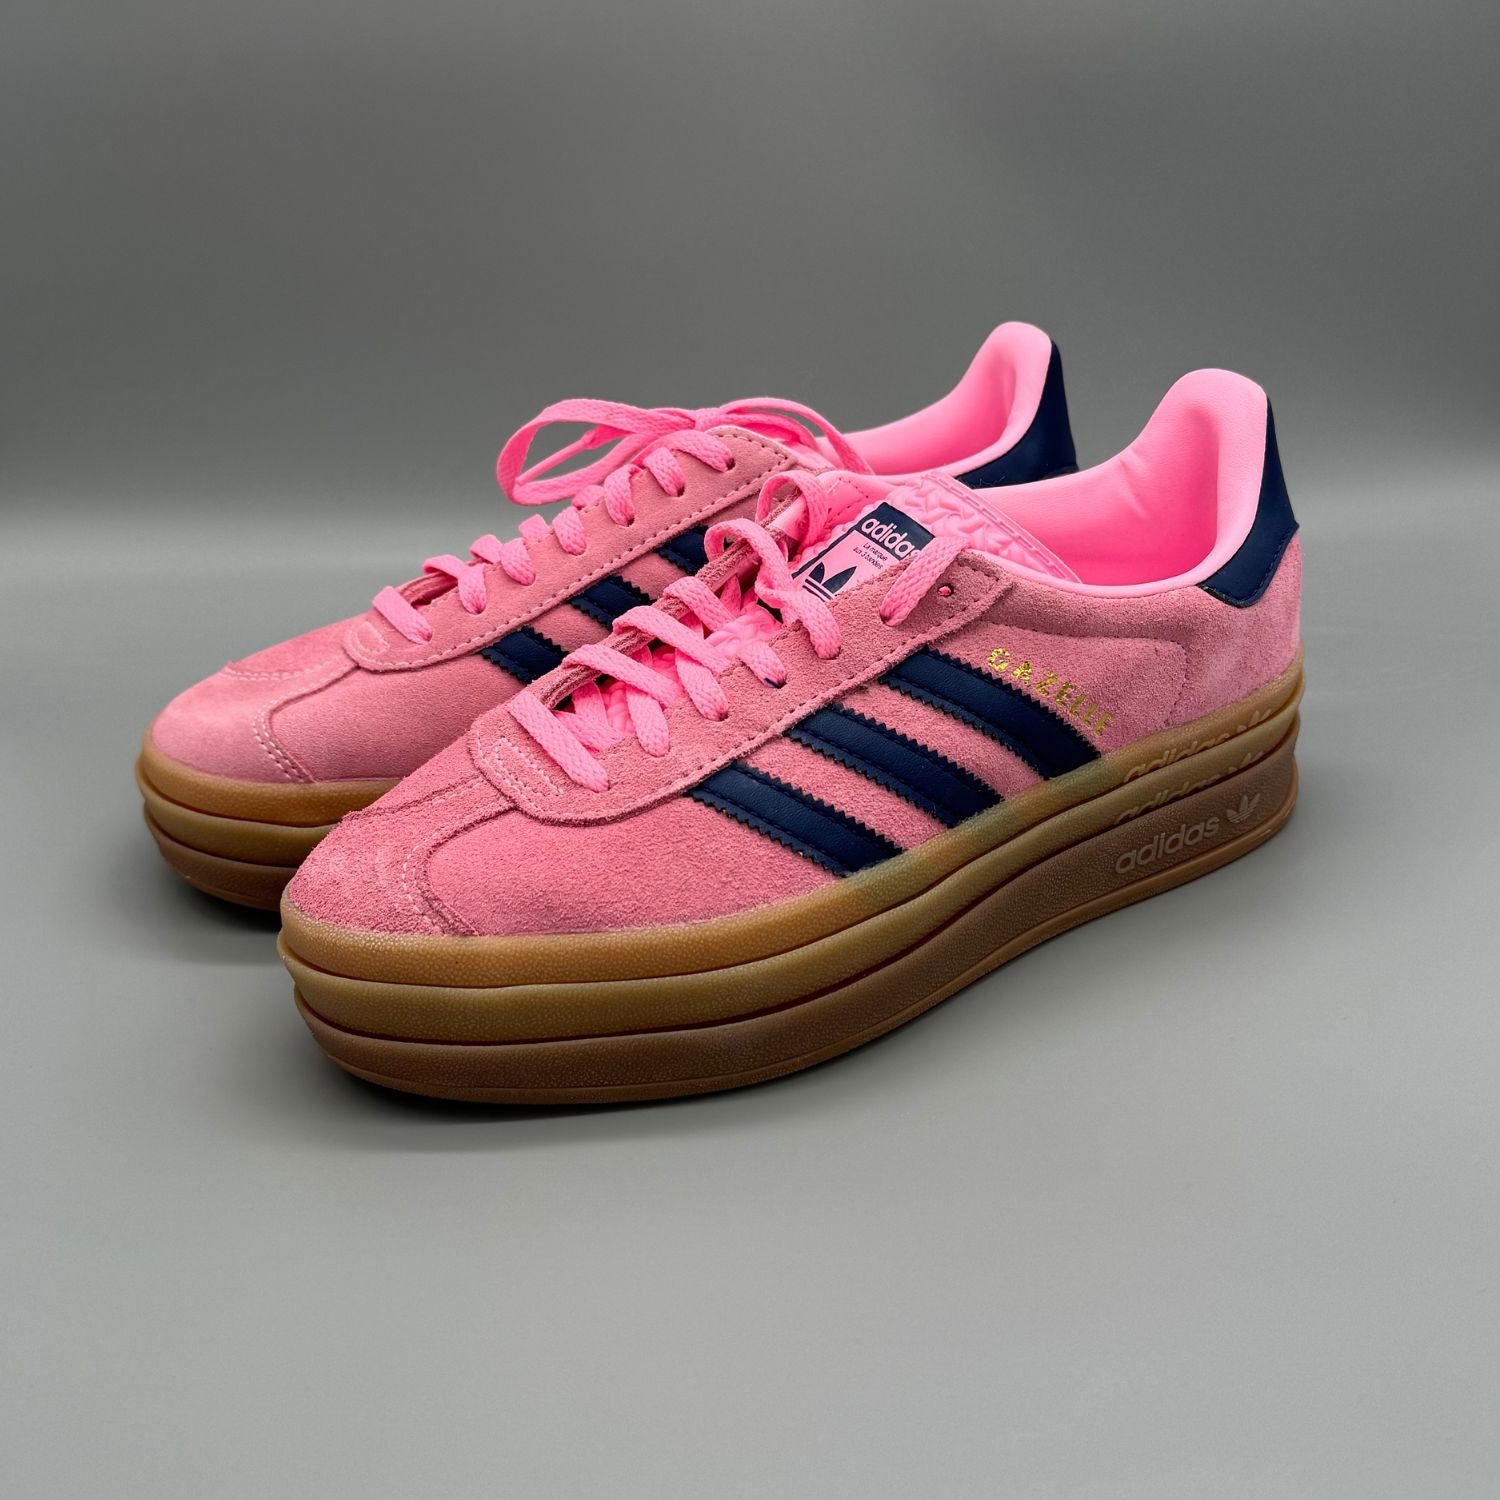 Adidas Gazelle Bold Pink Glow (W) - Sneakerterritory; Sneaker Territory; Adidas Gazelle Bold pink